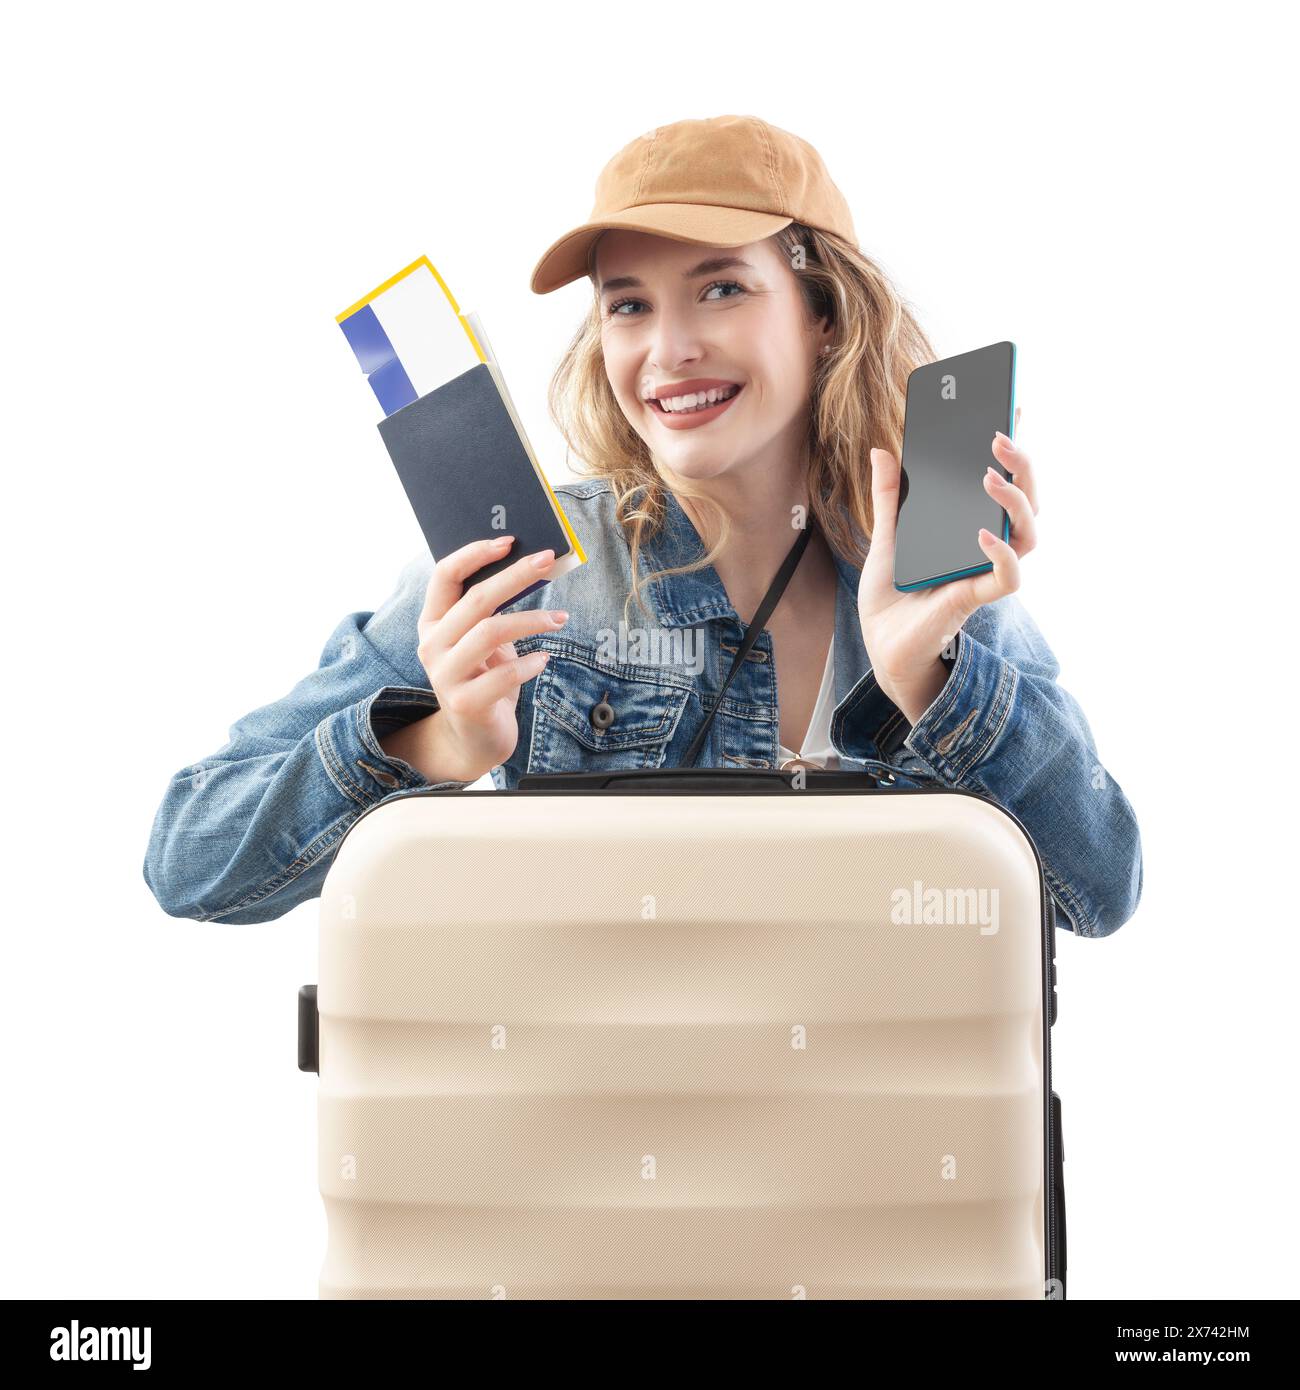 Heureuse jeune femme voyageuse touristique avec valise de chariot montrant l'écran de smartphone et le billet d'avion, isolé sur fond blanc. Concept d'été Banque D'Images